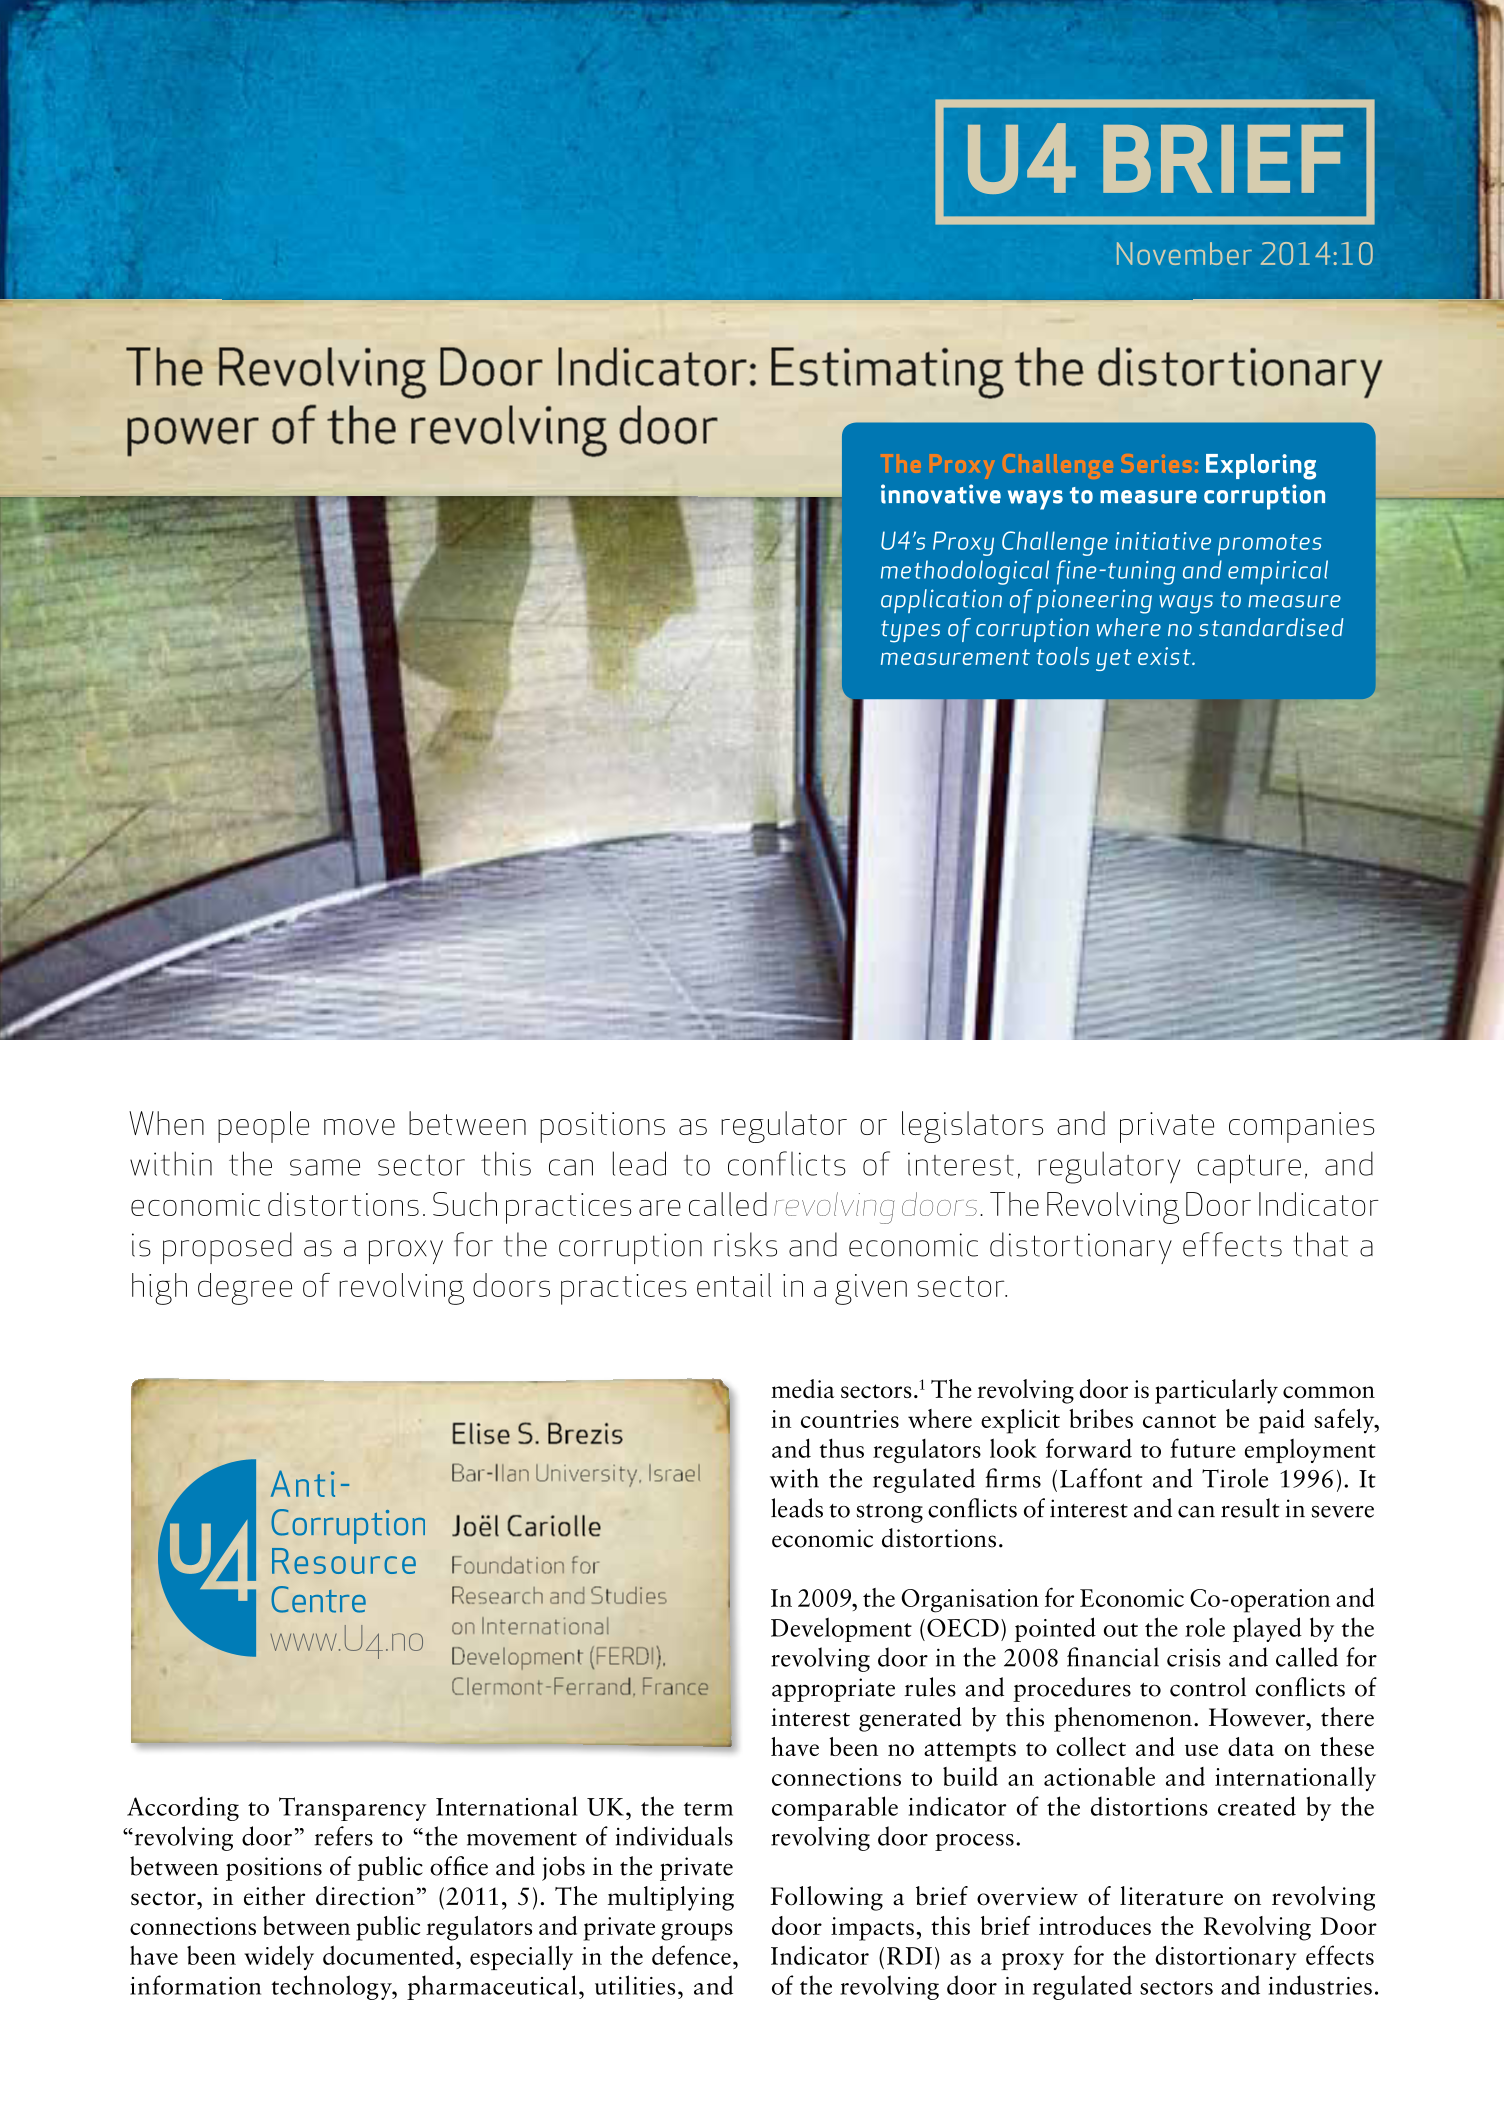 The Revolving Door Indicator: Estimating the distortionary power of the revolving door